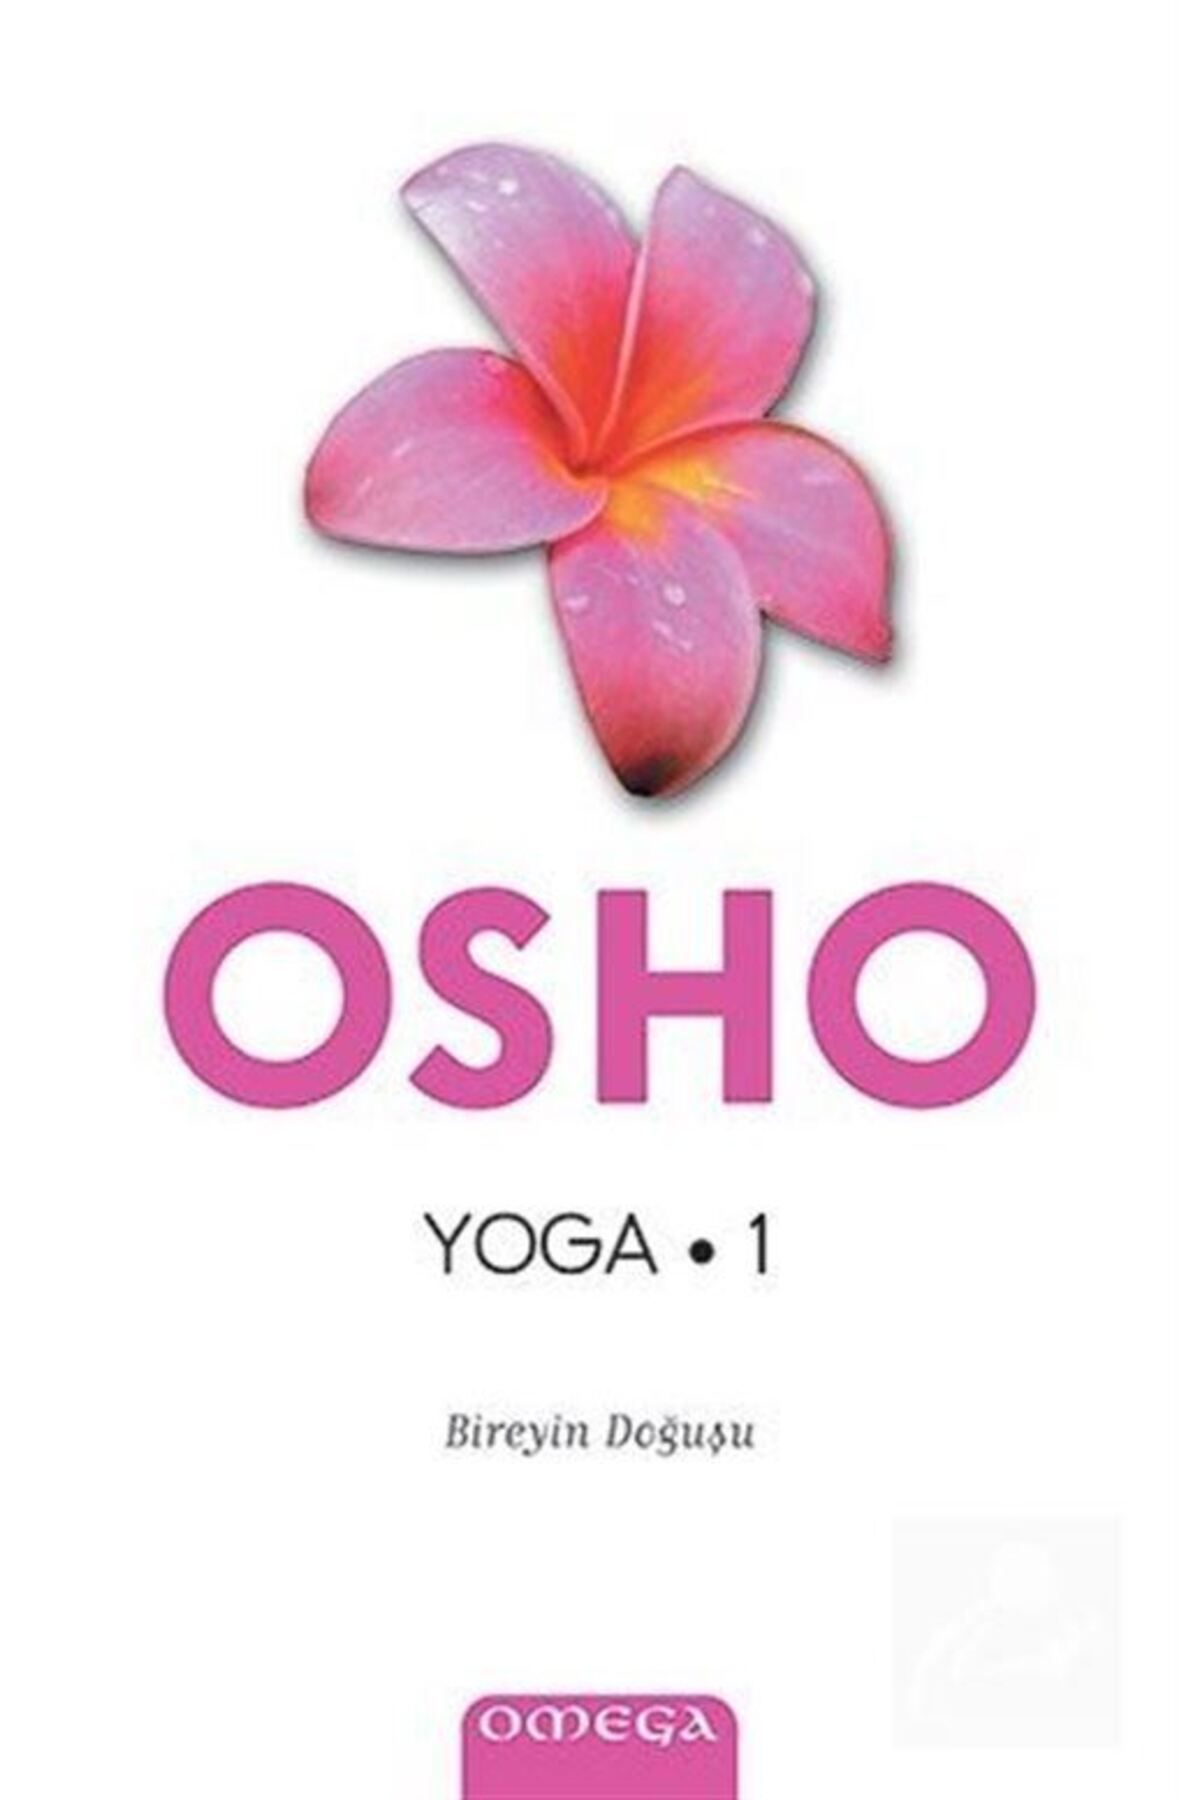 Omega Yayınları Yoga & Bireyin Doğuşu (1.KİTAP)